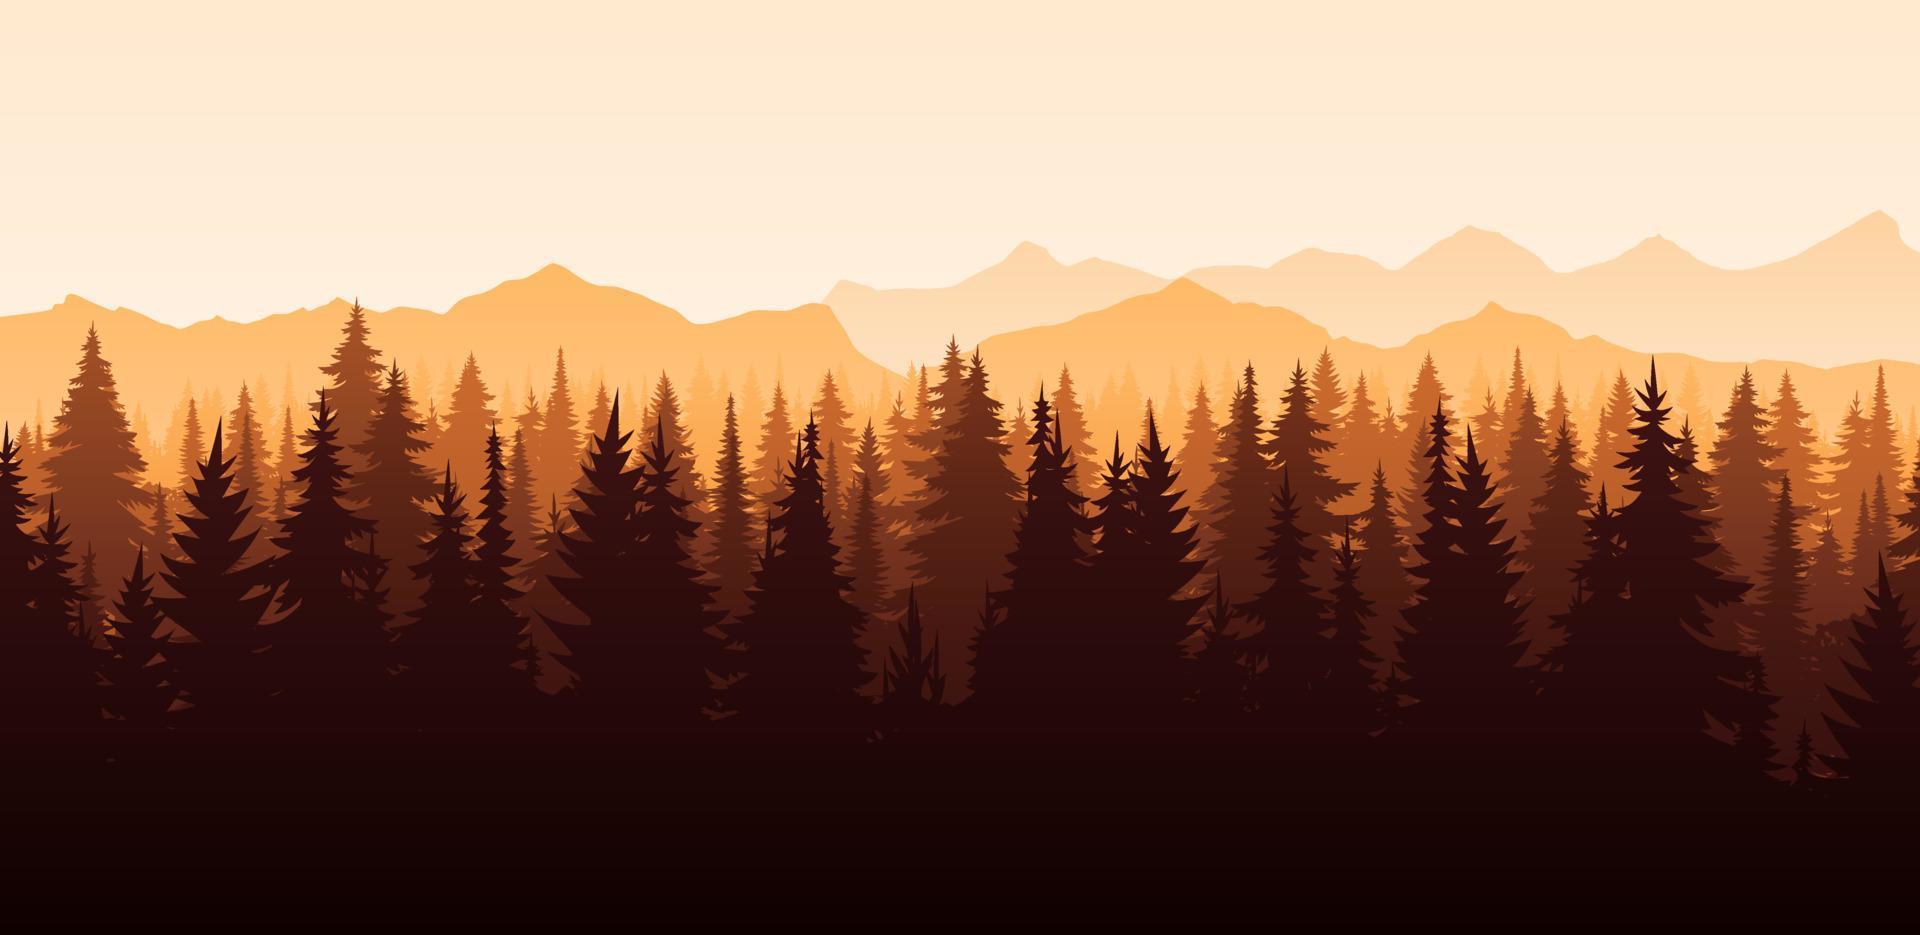 vector paisagem horizontal vermelha com nevoeiro, floresta, abeto, abeto e pôr do sol. ilustração de outono da silhueta de vista panorâmica, névoa e montanhas laranja. árvores de outono